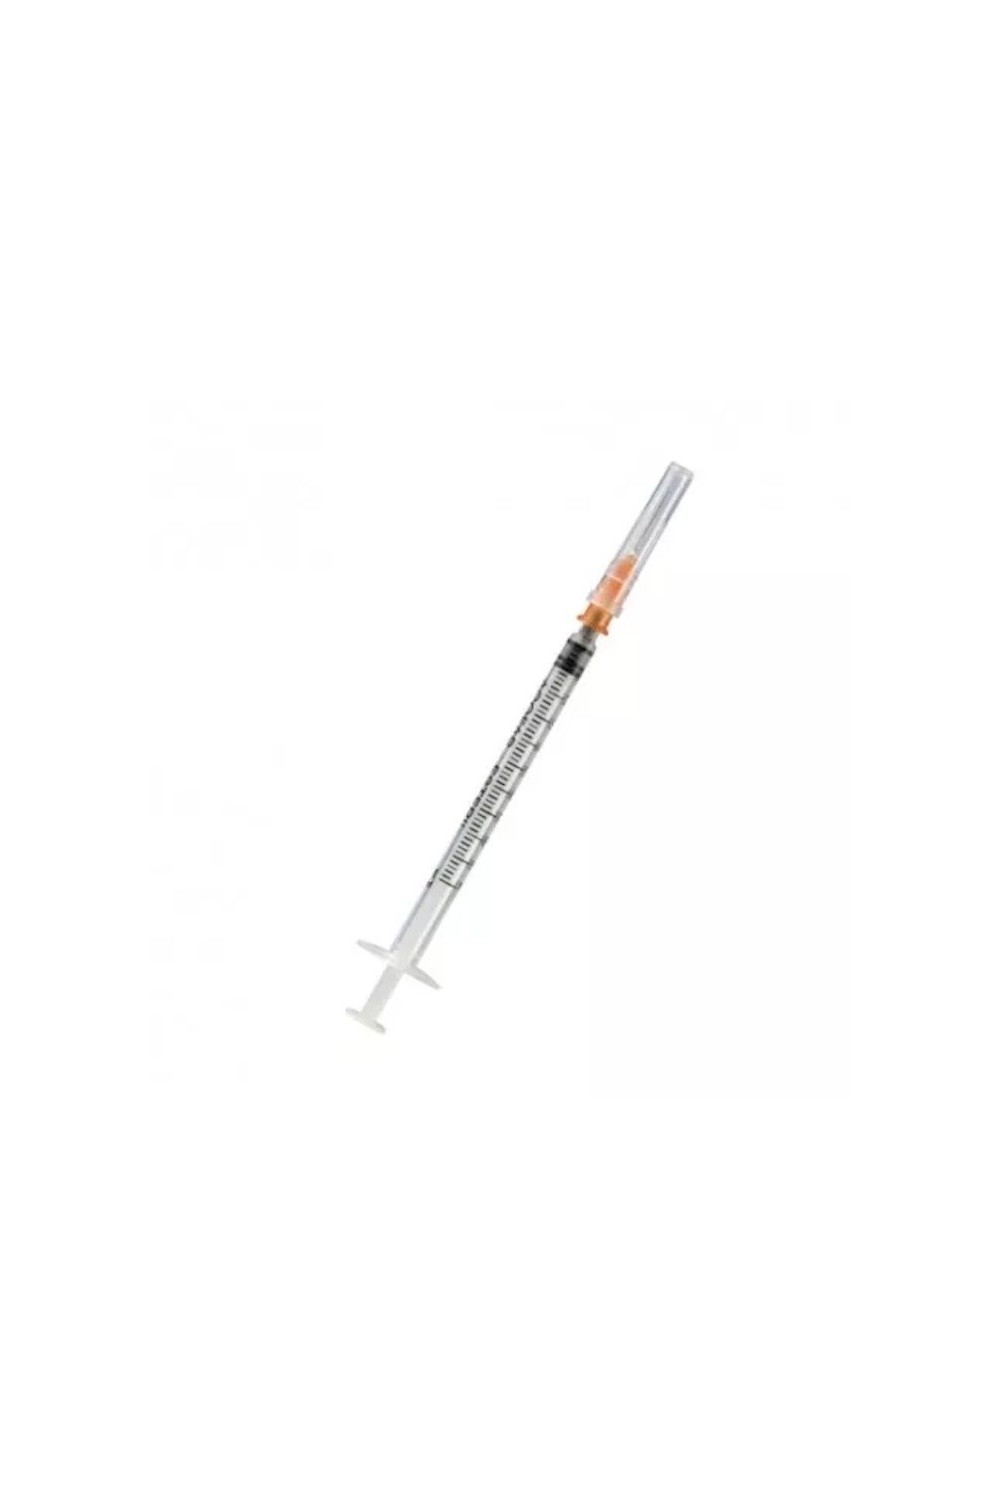 ICO - Insulin Syringe C/AG 1ml 0,30 X 8mm 10 Units